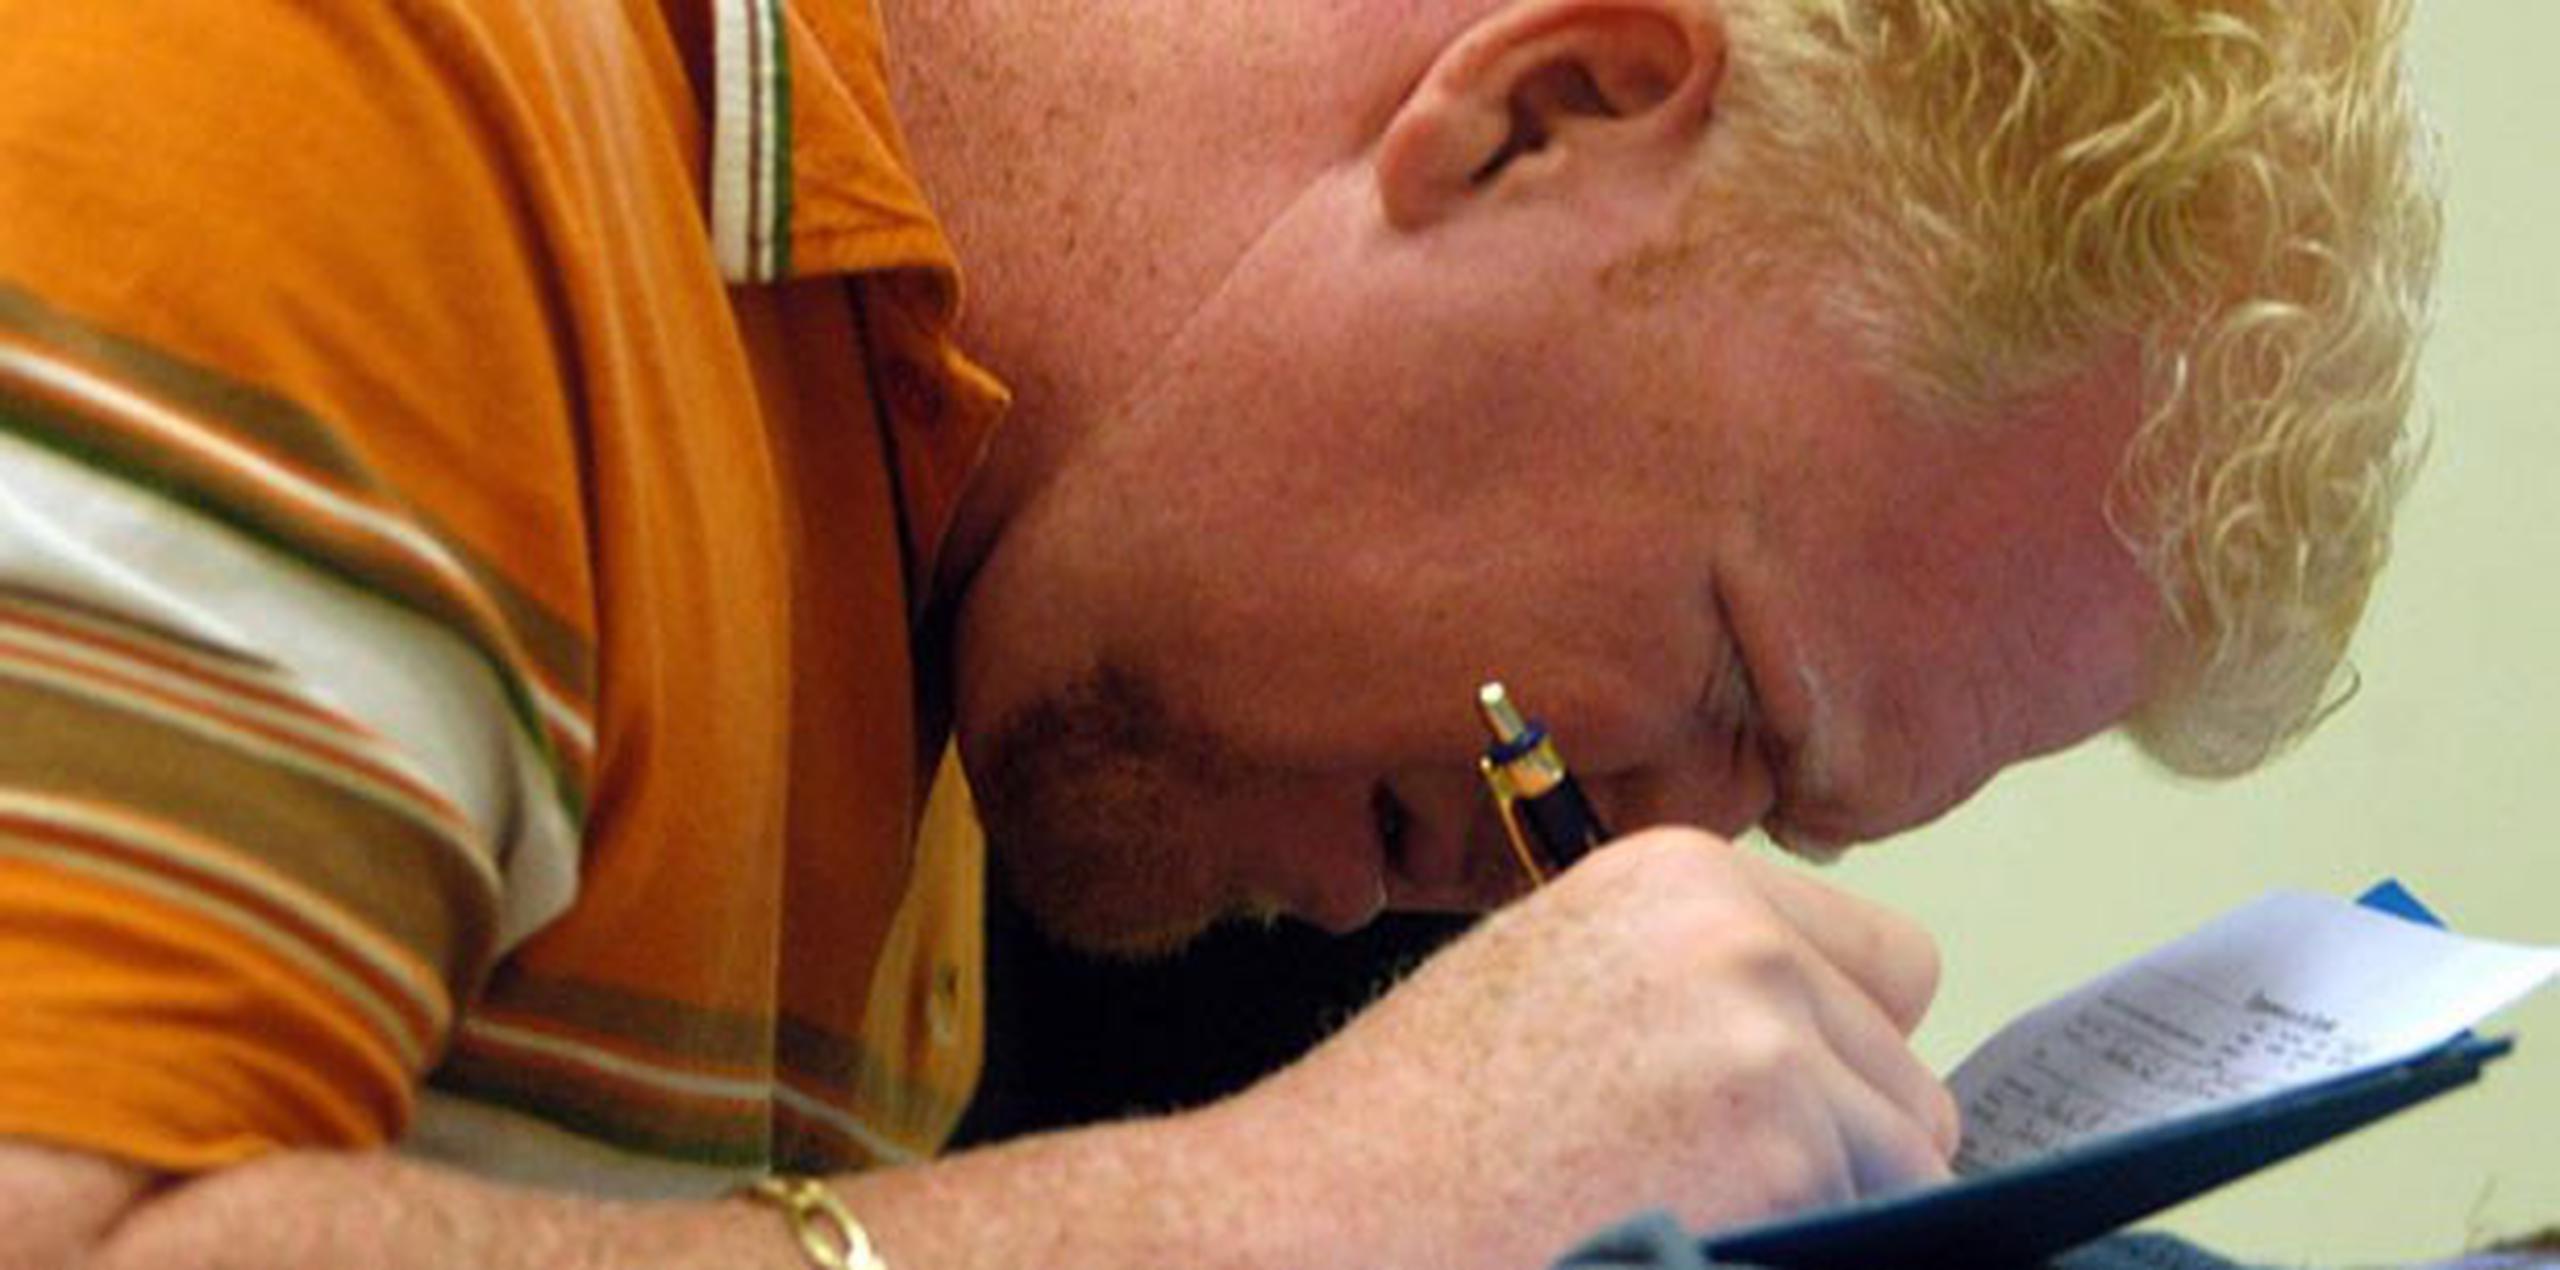 El albinismo es una condición hereditaria que afecta la producción de melanina y ocurre a través de una mutación genética. (Archivo)